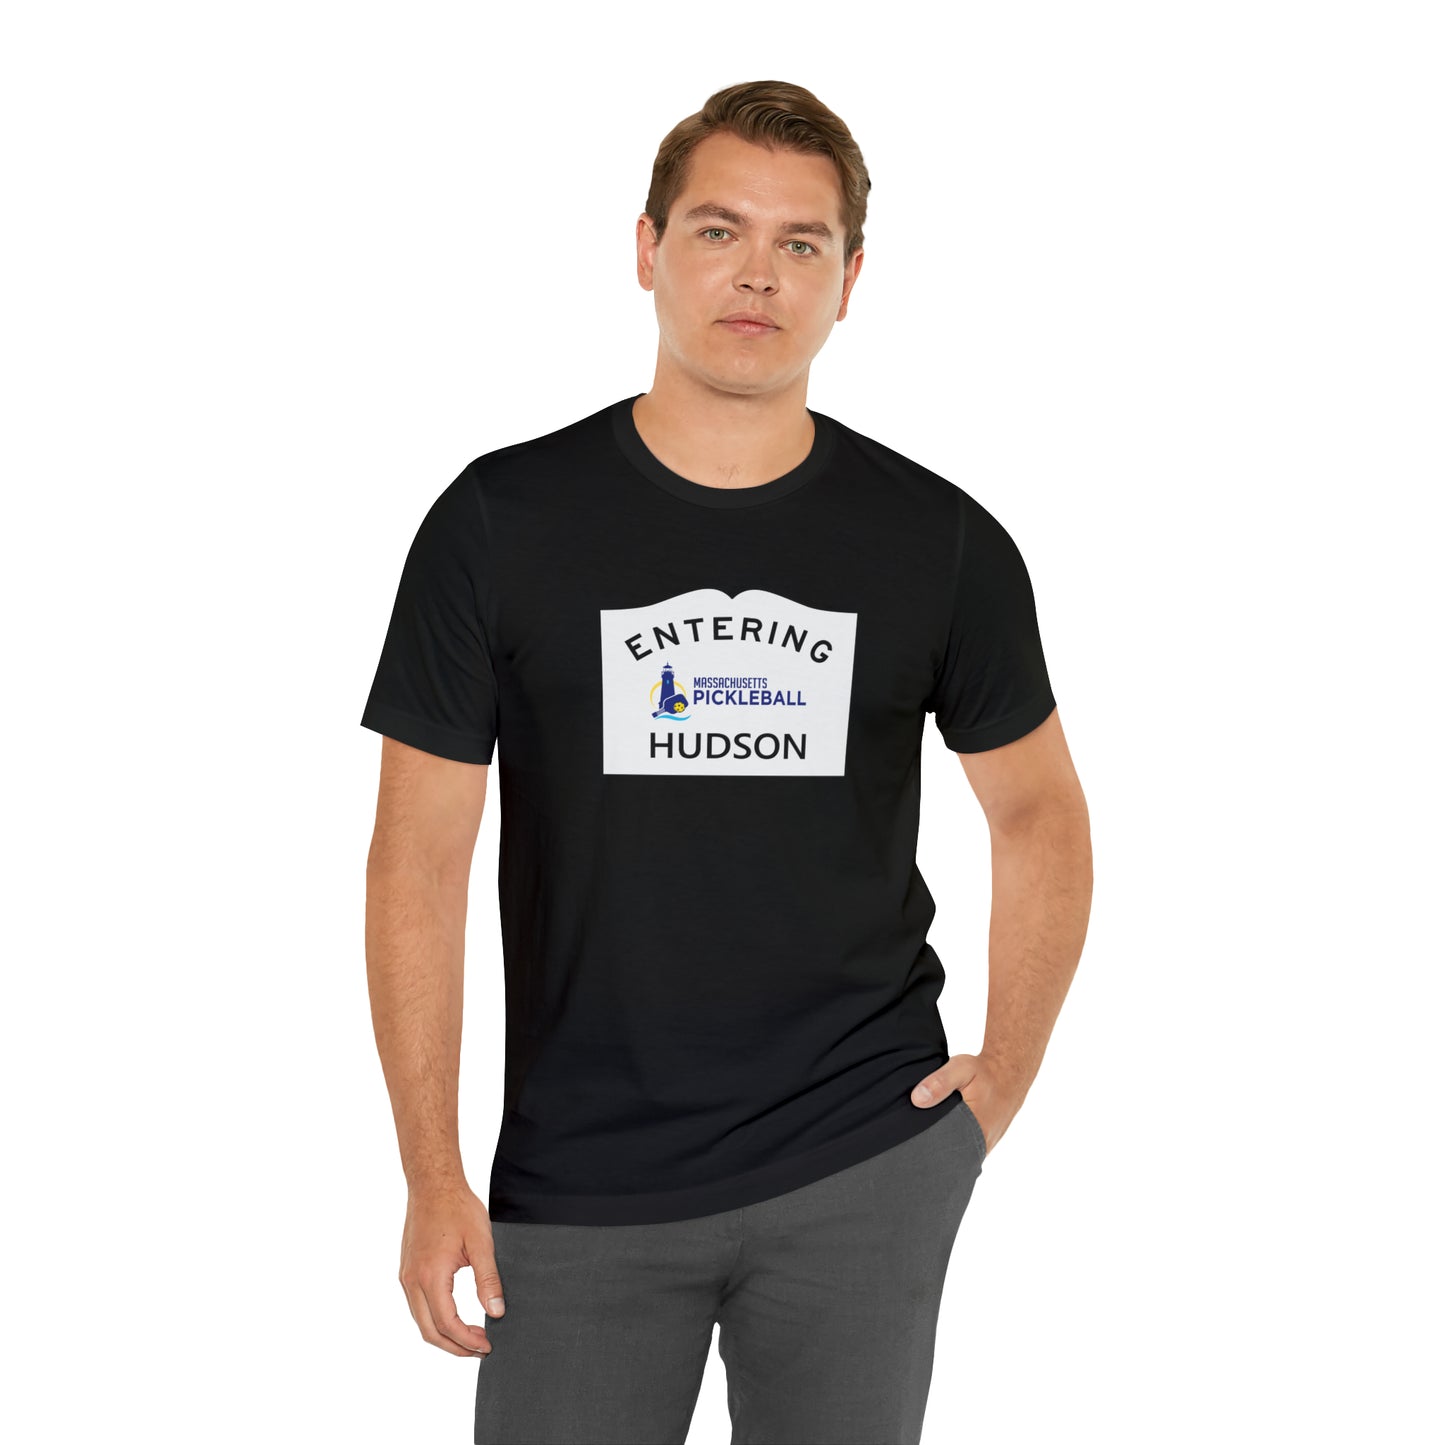 Hudson, Mass Pickleball Short Sleeve T-Shirt